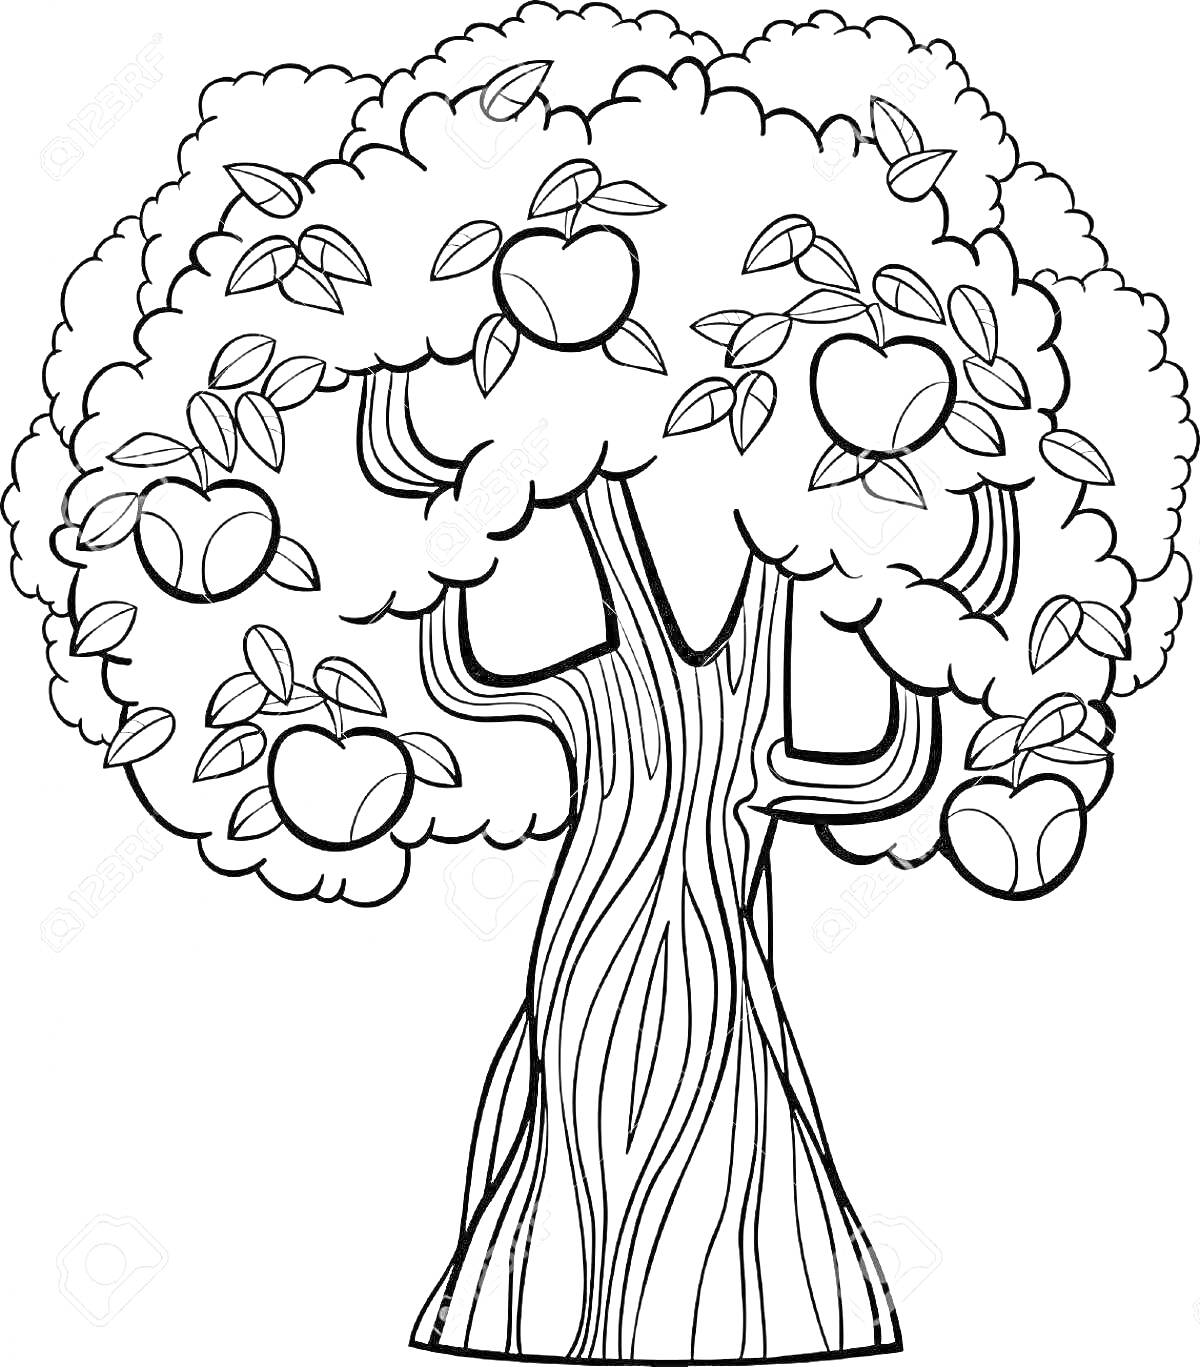 Раскраска Яблоня в саду с яблоками и листьями